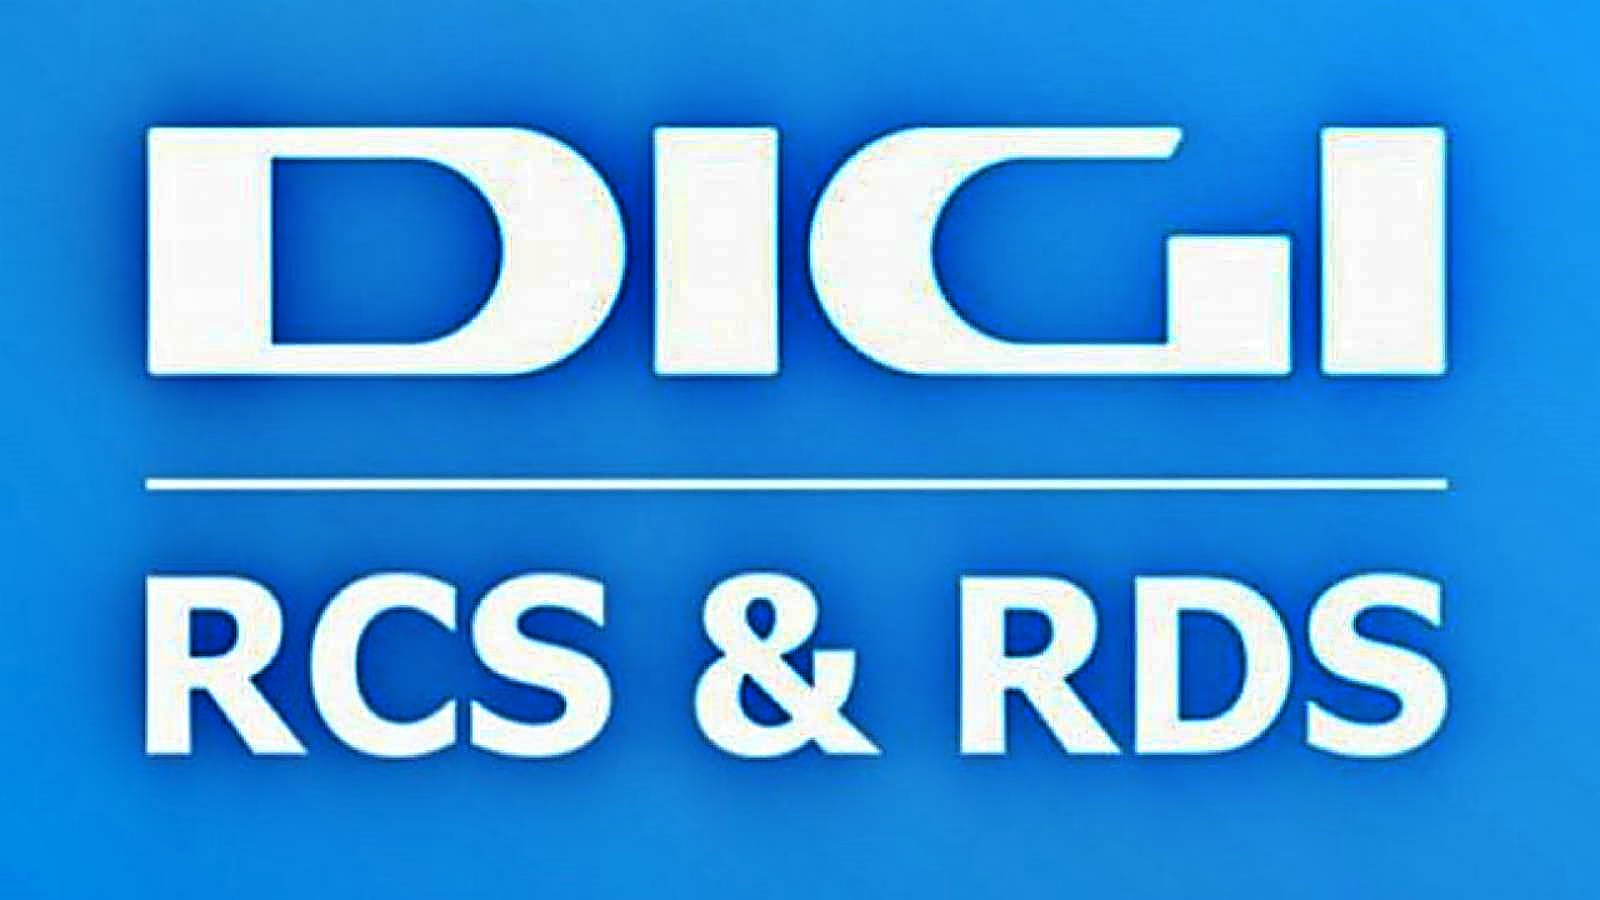 Viralliset RCS- ja RDS-tiedot on tarkoitettu romanialaisille asiakkaille